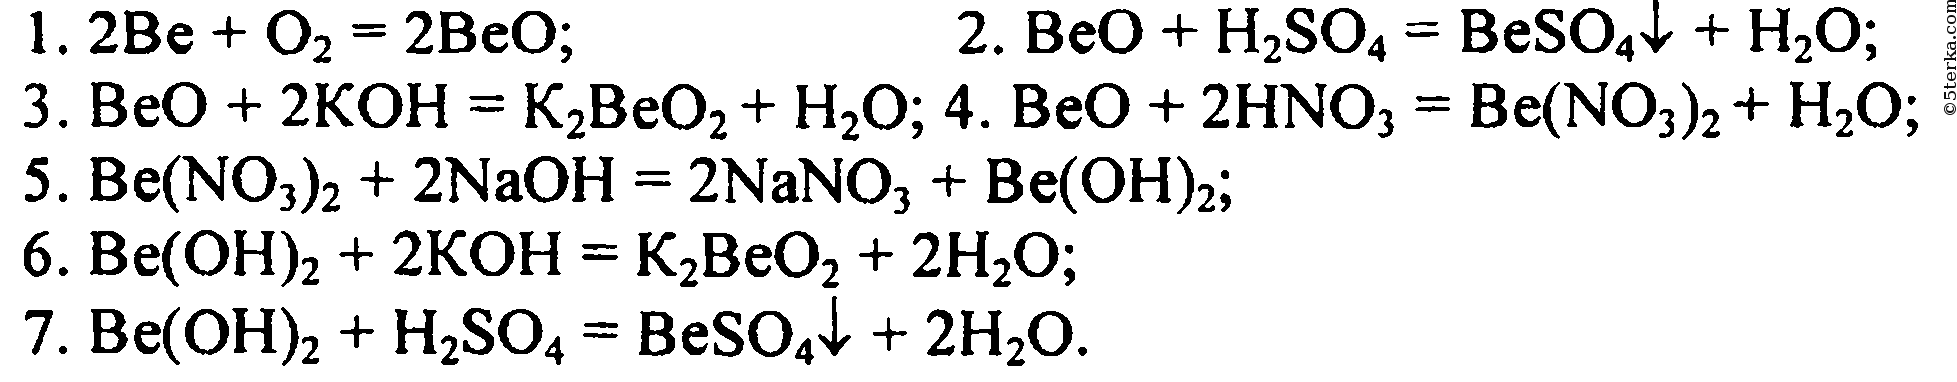 Beo ba oh 2. Уравнения реакций бериллия. Превращение бериллия. Цепочка превращений с бериллием. Генетический ряд бериллия с уравнениями реакций.